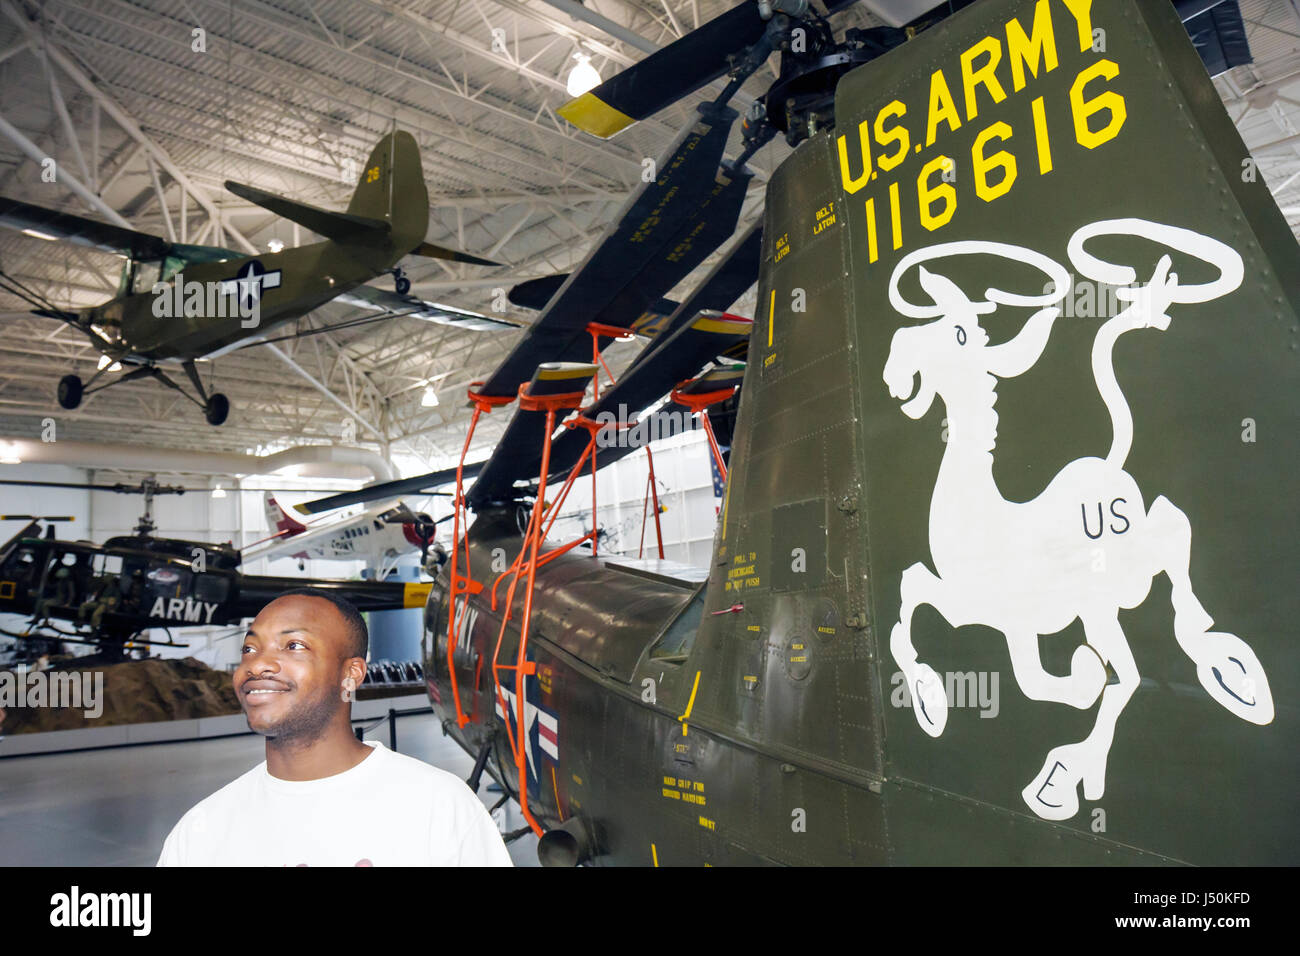 Alabama,Dale County,Ft. Fort Rucker, Museo de la Aviación del Ejército de los Estados Unidos, hombres negros adultos adultos, aviones, helicópteros militares, combate, exhibición ex Foto de stock